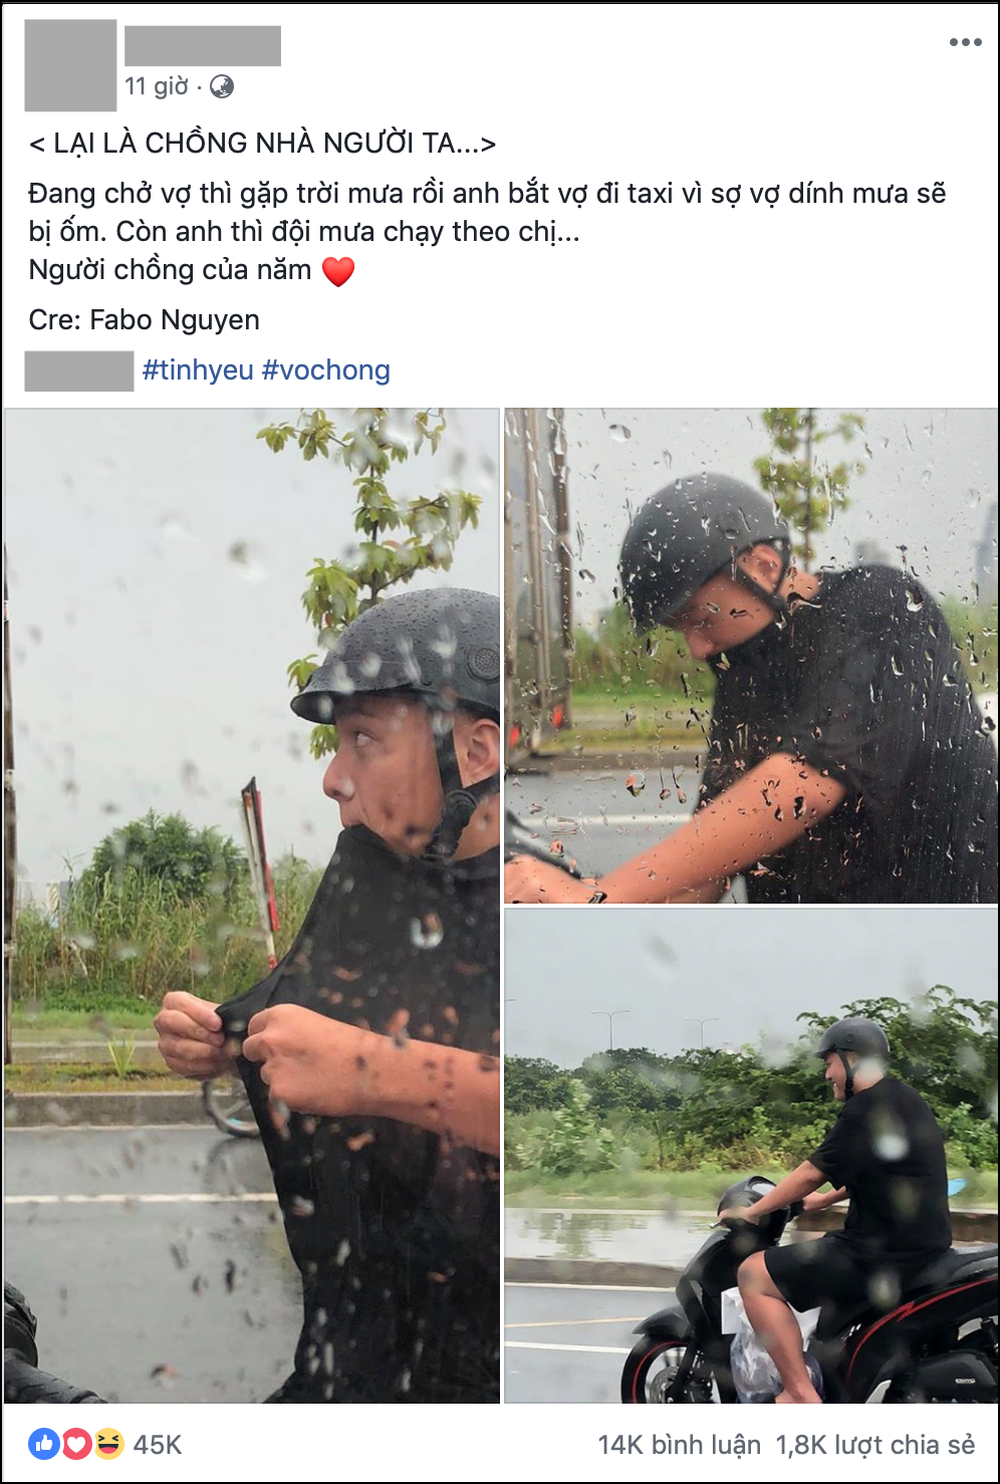 Choáng với độ chiều vợ của người chồng trong bức ảnh đội mưa chạy xe máy đuổi theo taxi - Ảnh 1.